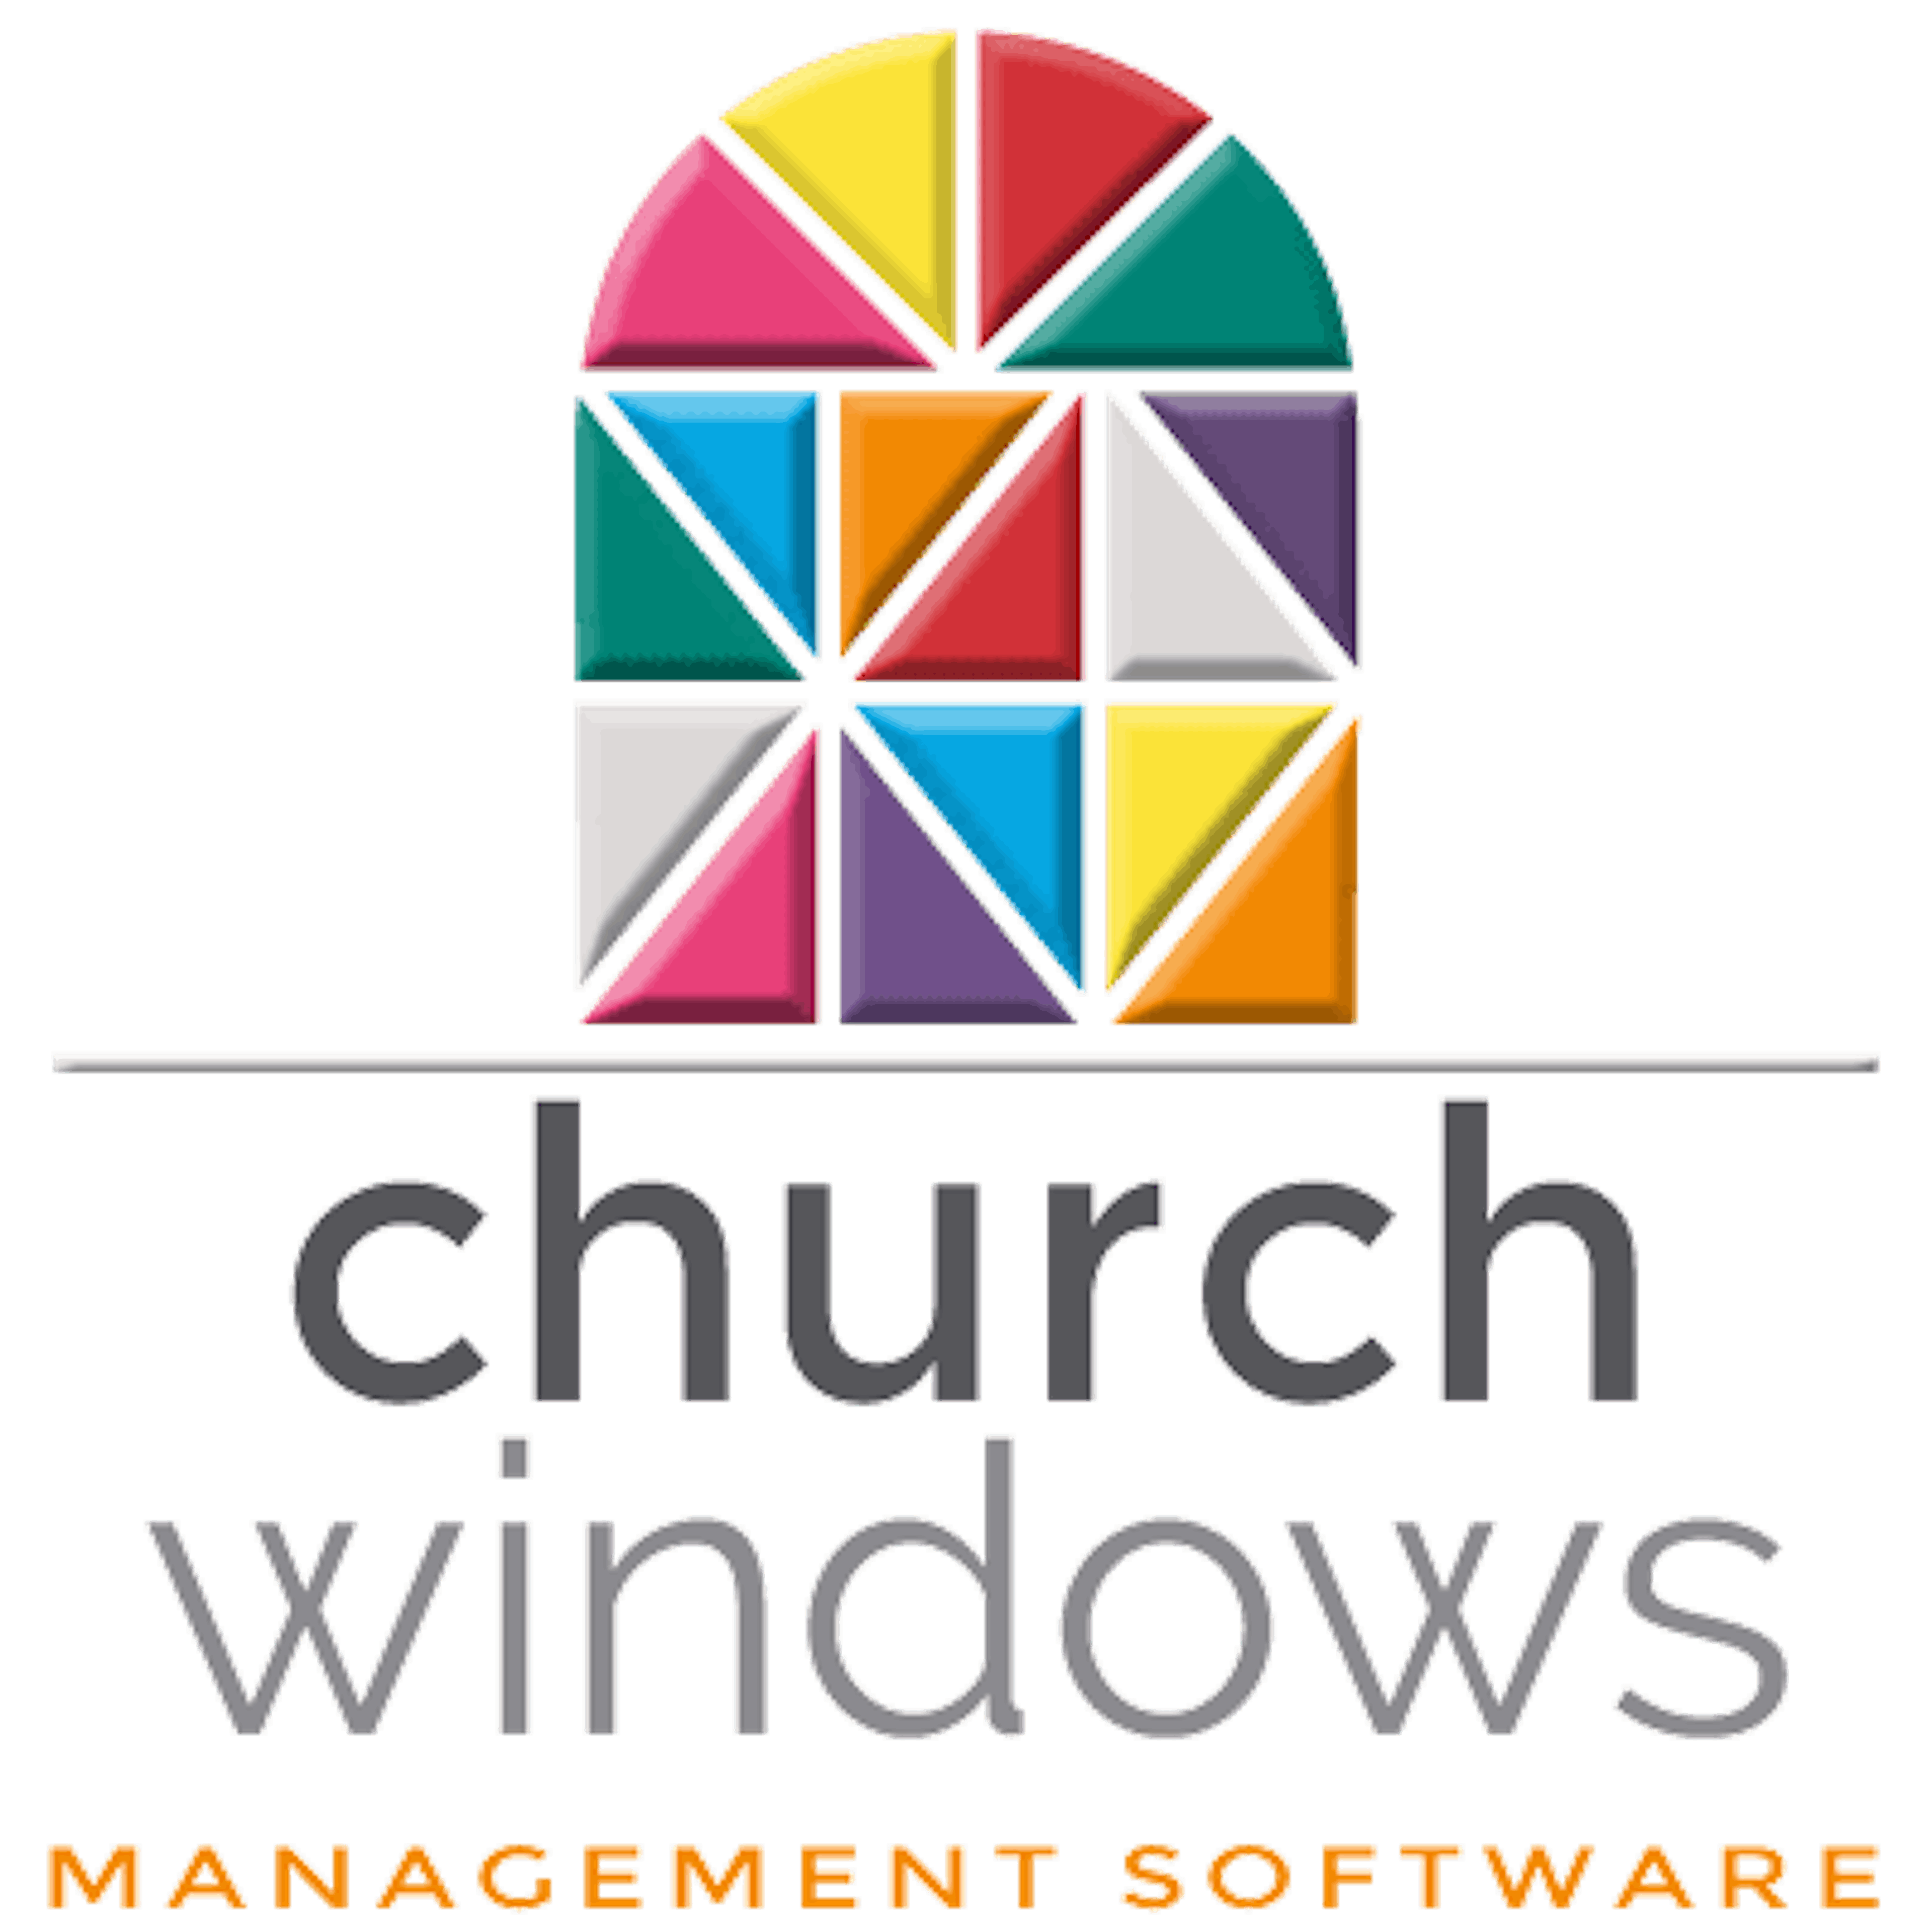 Church Windows Logo